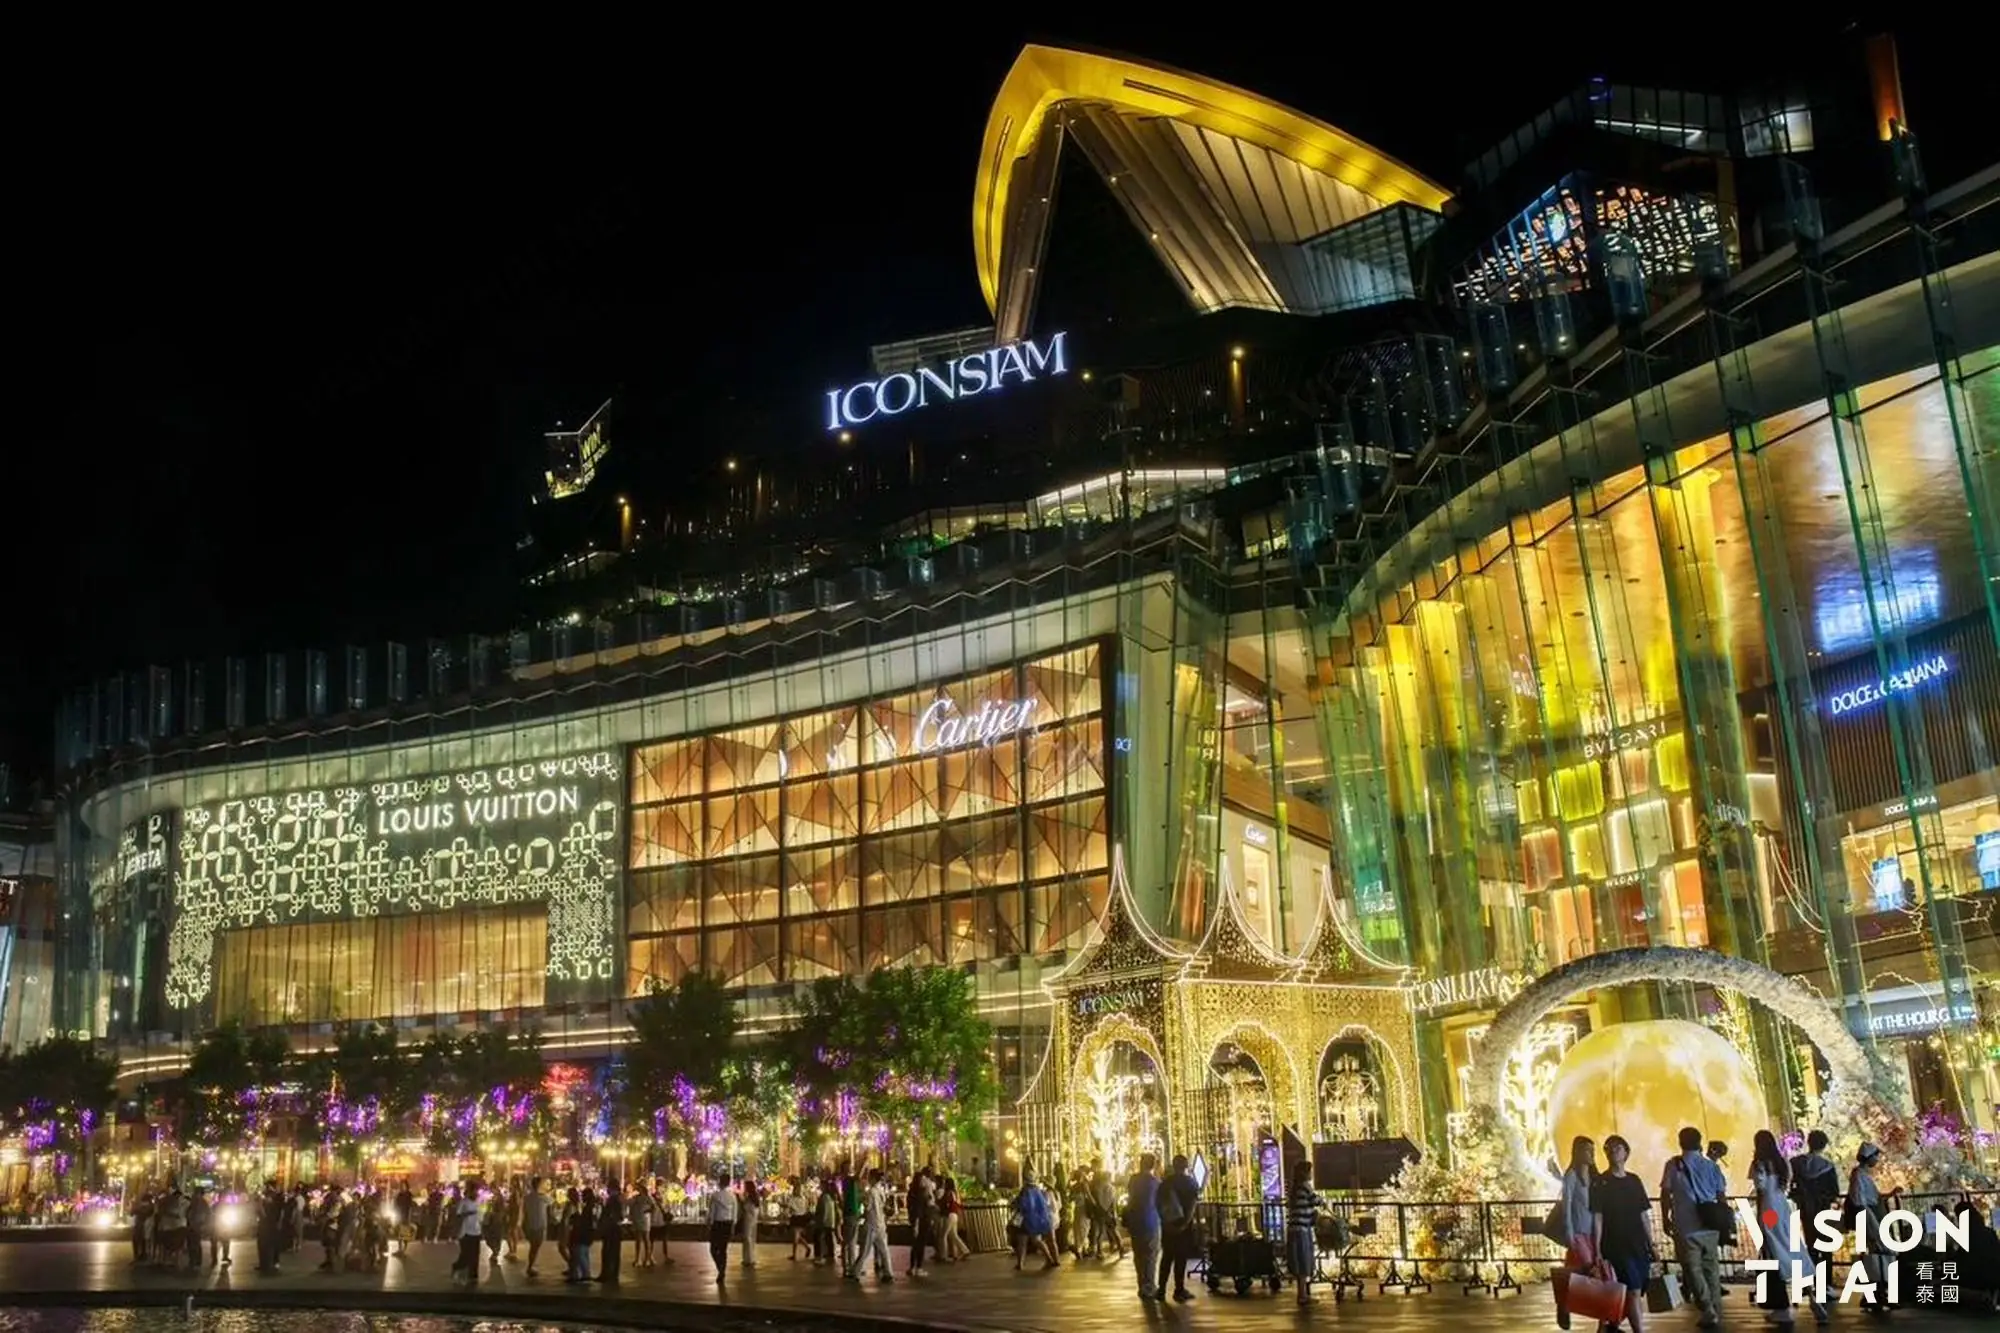 有着祈福水灯外观的「曼谷暹罗天地ICONSIAM」，是一座紧靠昭披耶河畔的综合购物商城。 （图片来源：Vision Thai 看见泰国）